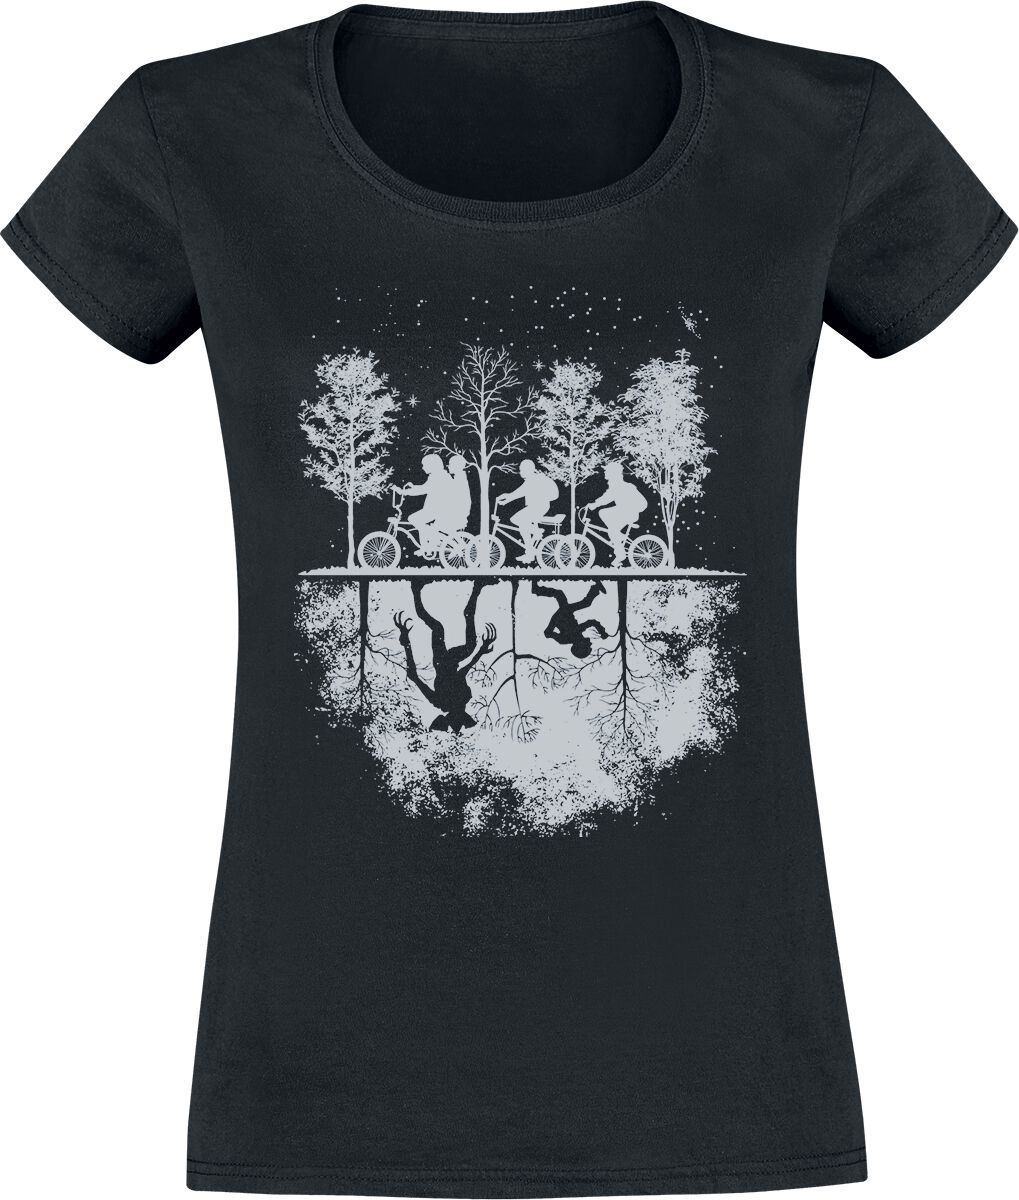 Stranger Things T-Shirt - Upside Down - S bis XXL - für Damen - Größe M - schwarz  - EMP exklusives Merchandise!